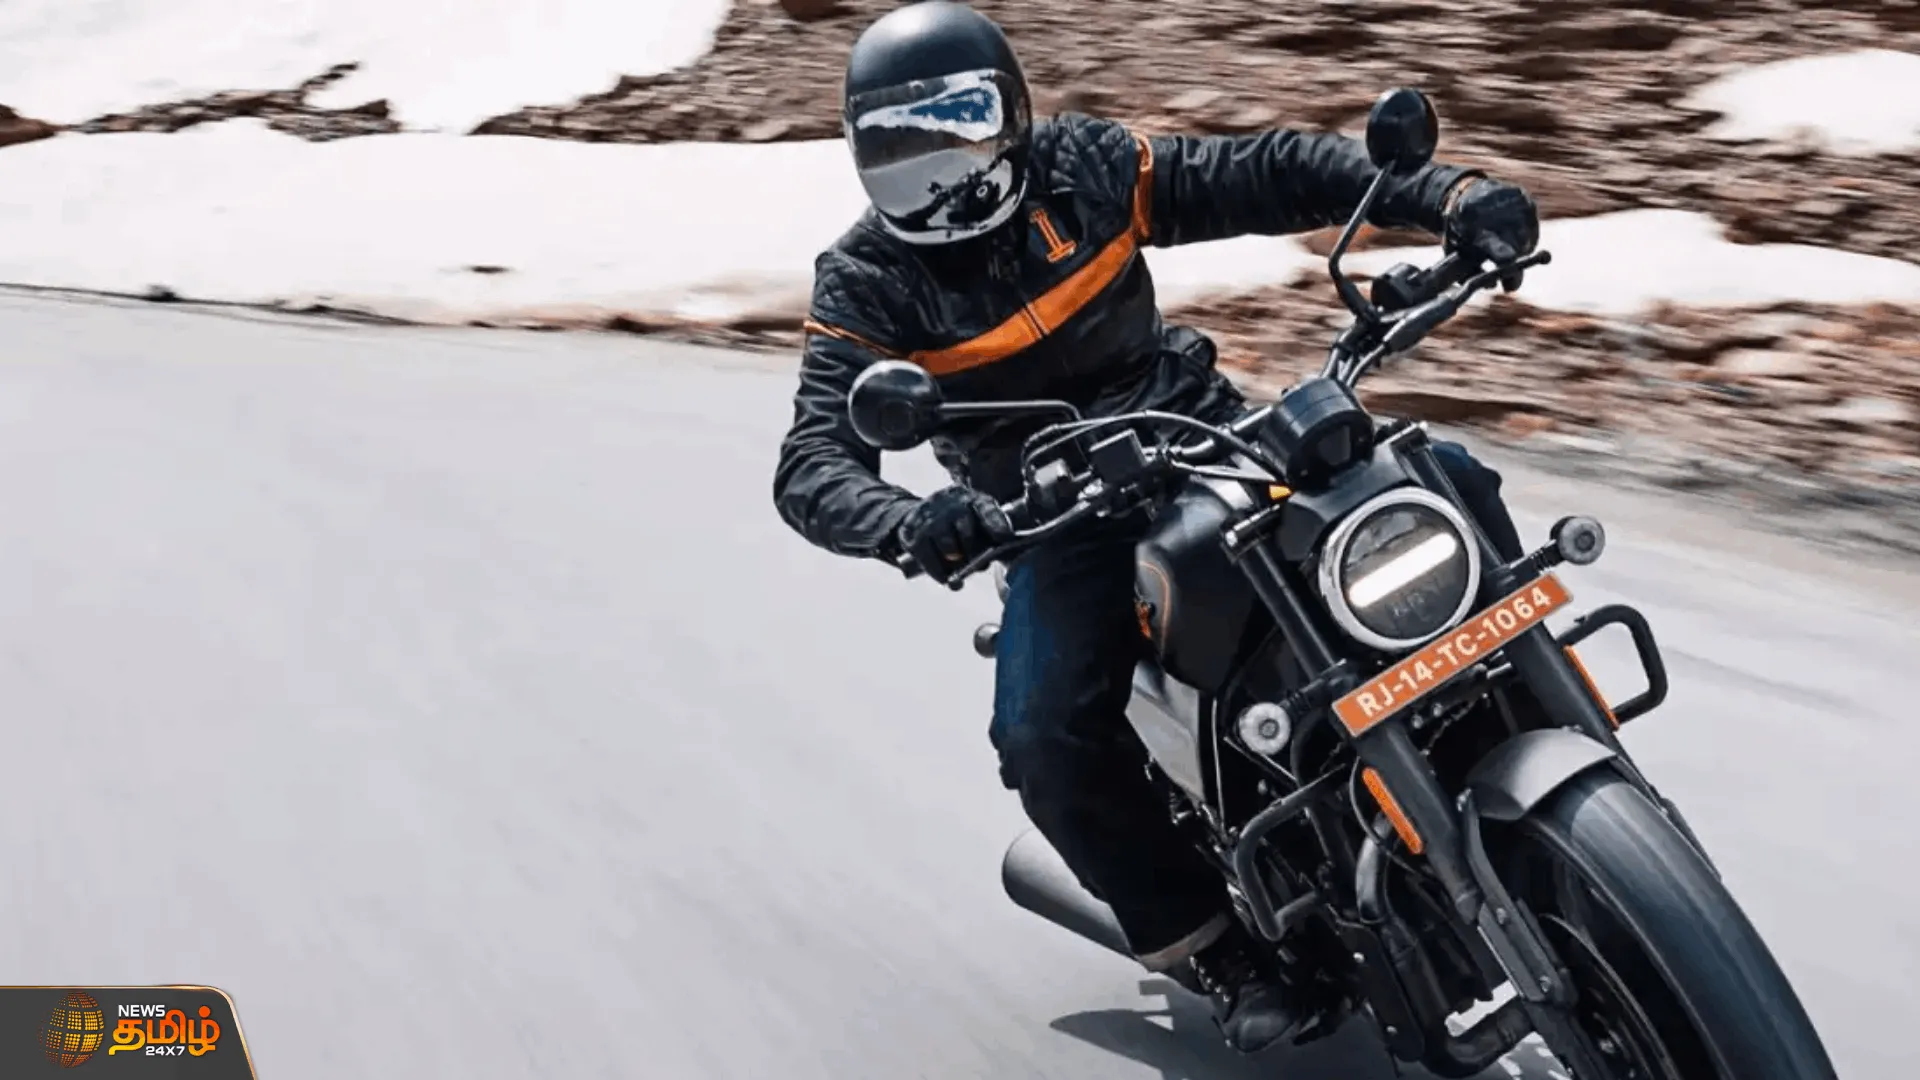 Harley Davidson X440 பைக்கின் புதிய Scrambler வெர்ஷன்   Scrambler வெர்ஷன் 2024ஆம் ஆண்டு வெளியாகும் என தகவல்